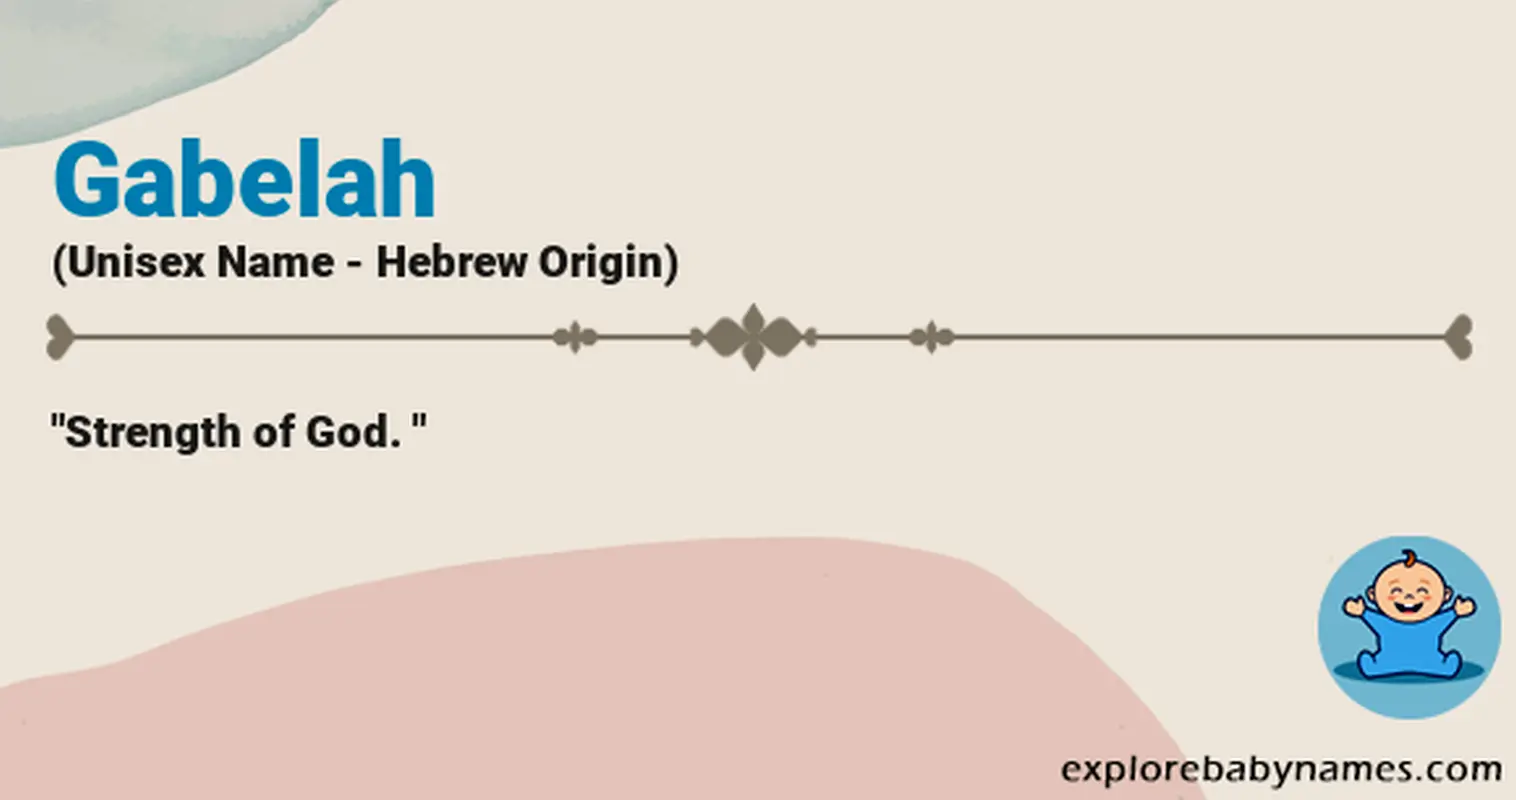 Meaning of Gabelah